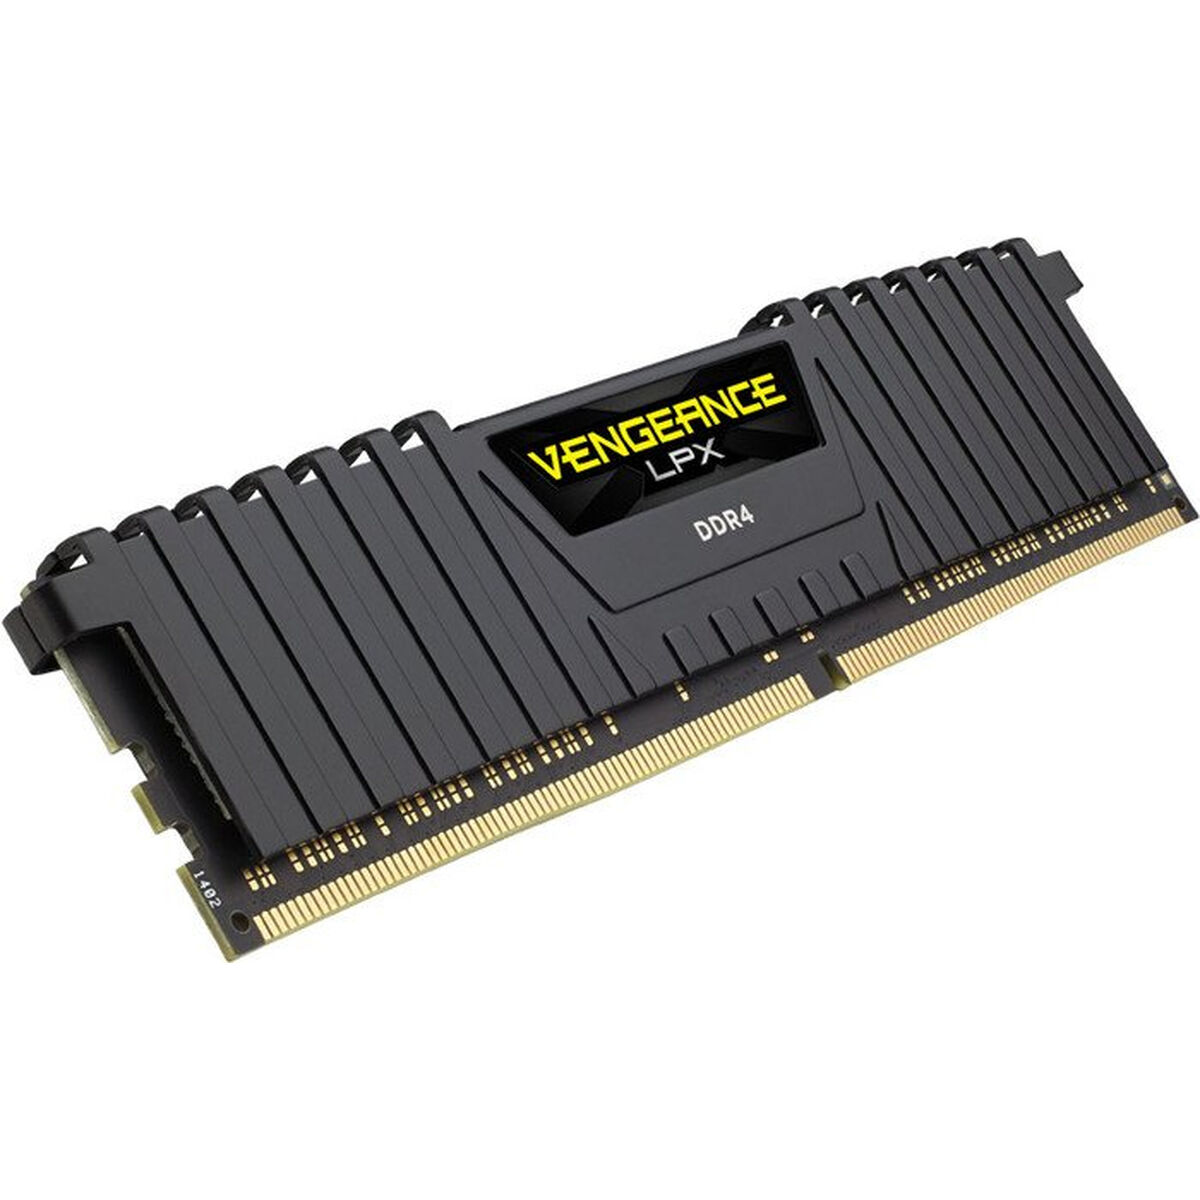 Mémoire RAM Corsair Vengeance LPX 16GB DDR4-2666 CL16 2666 MHz DDR4 16 GB DDR4-SDRAM